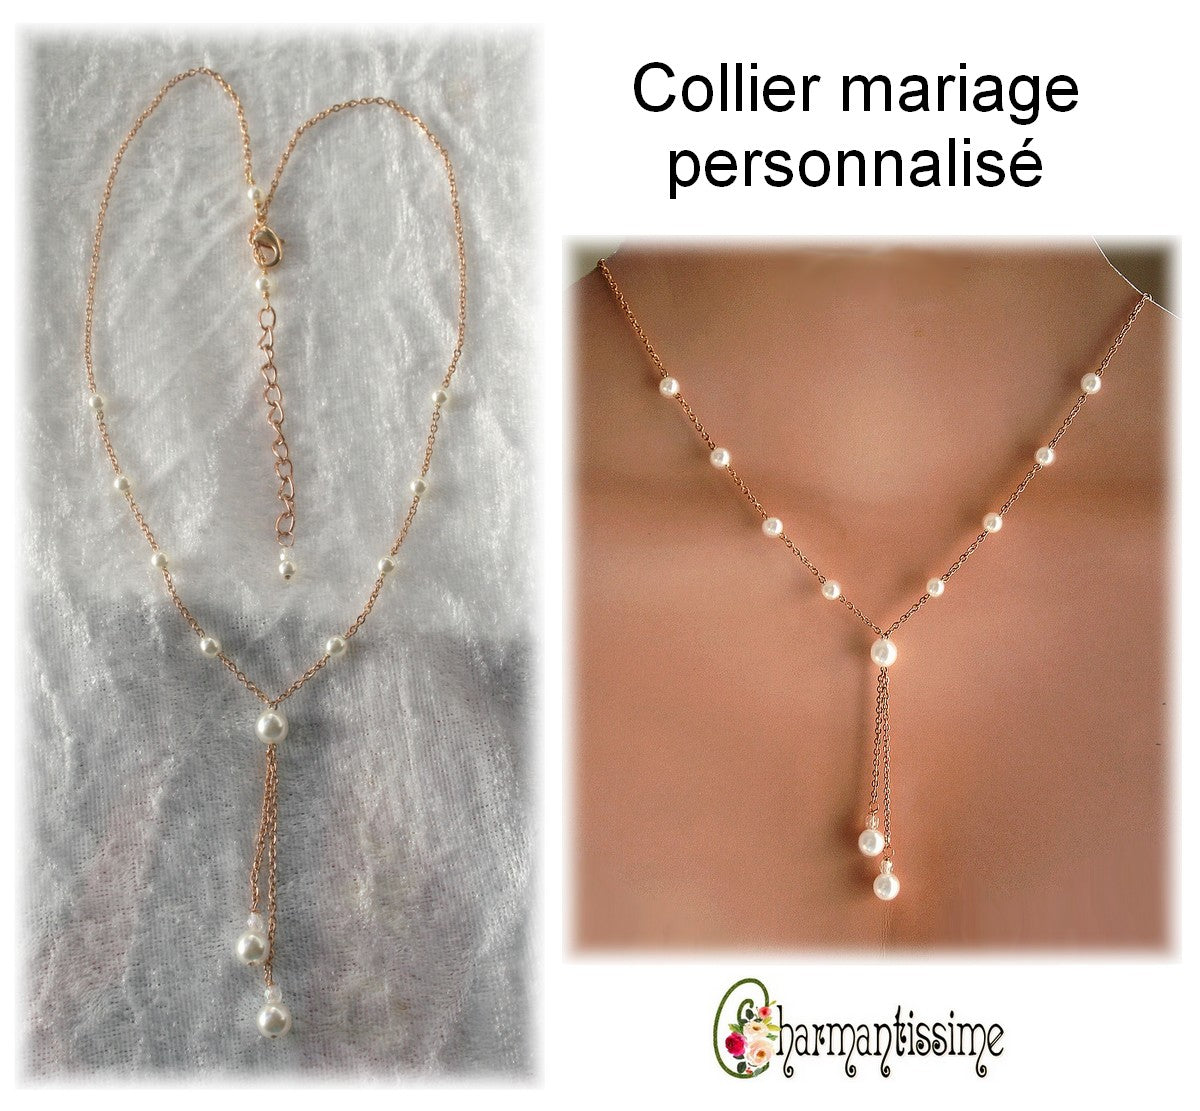 Collier de mariée en acier or rose gold et perles blanches nacrées, personnalisé sur mesure